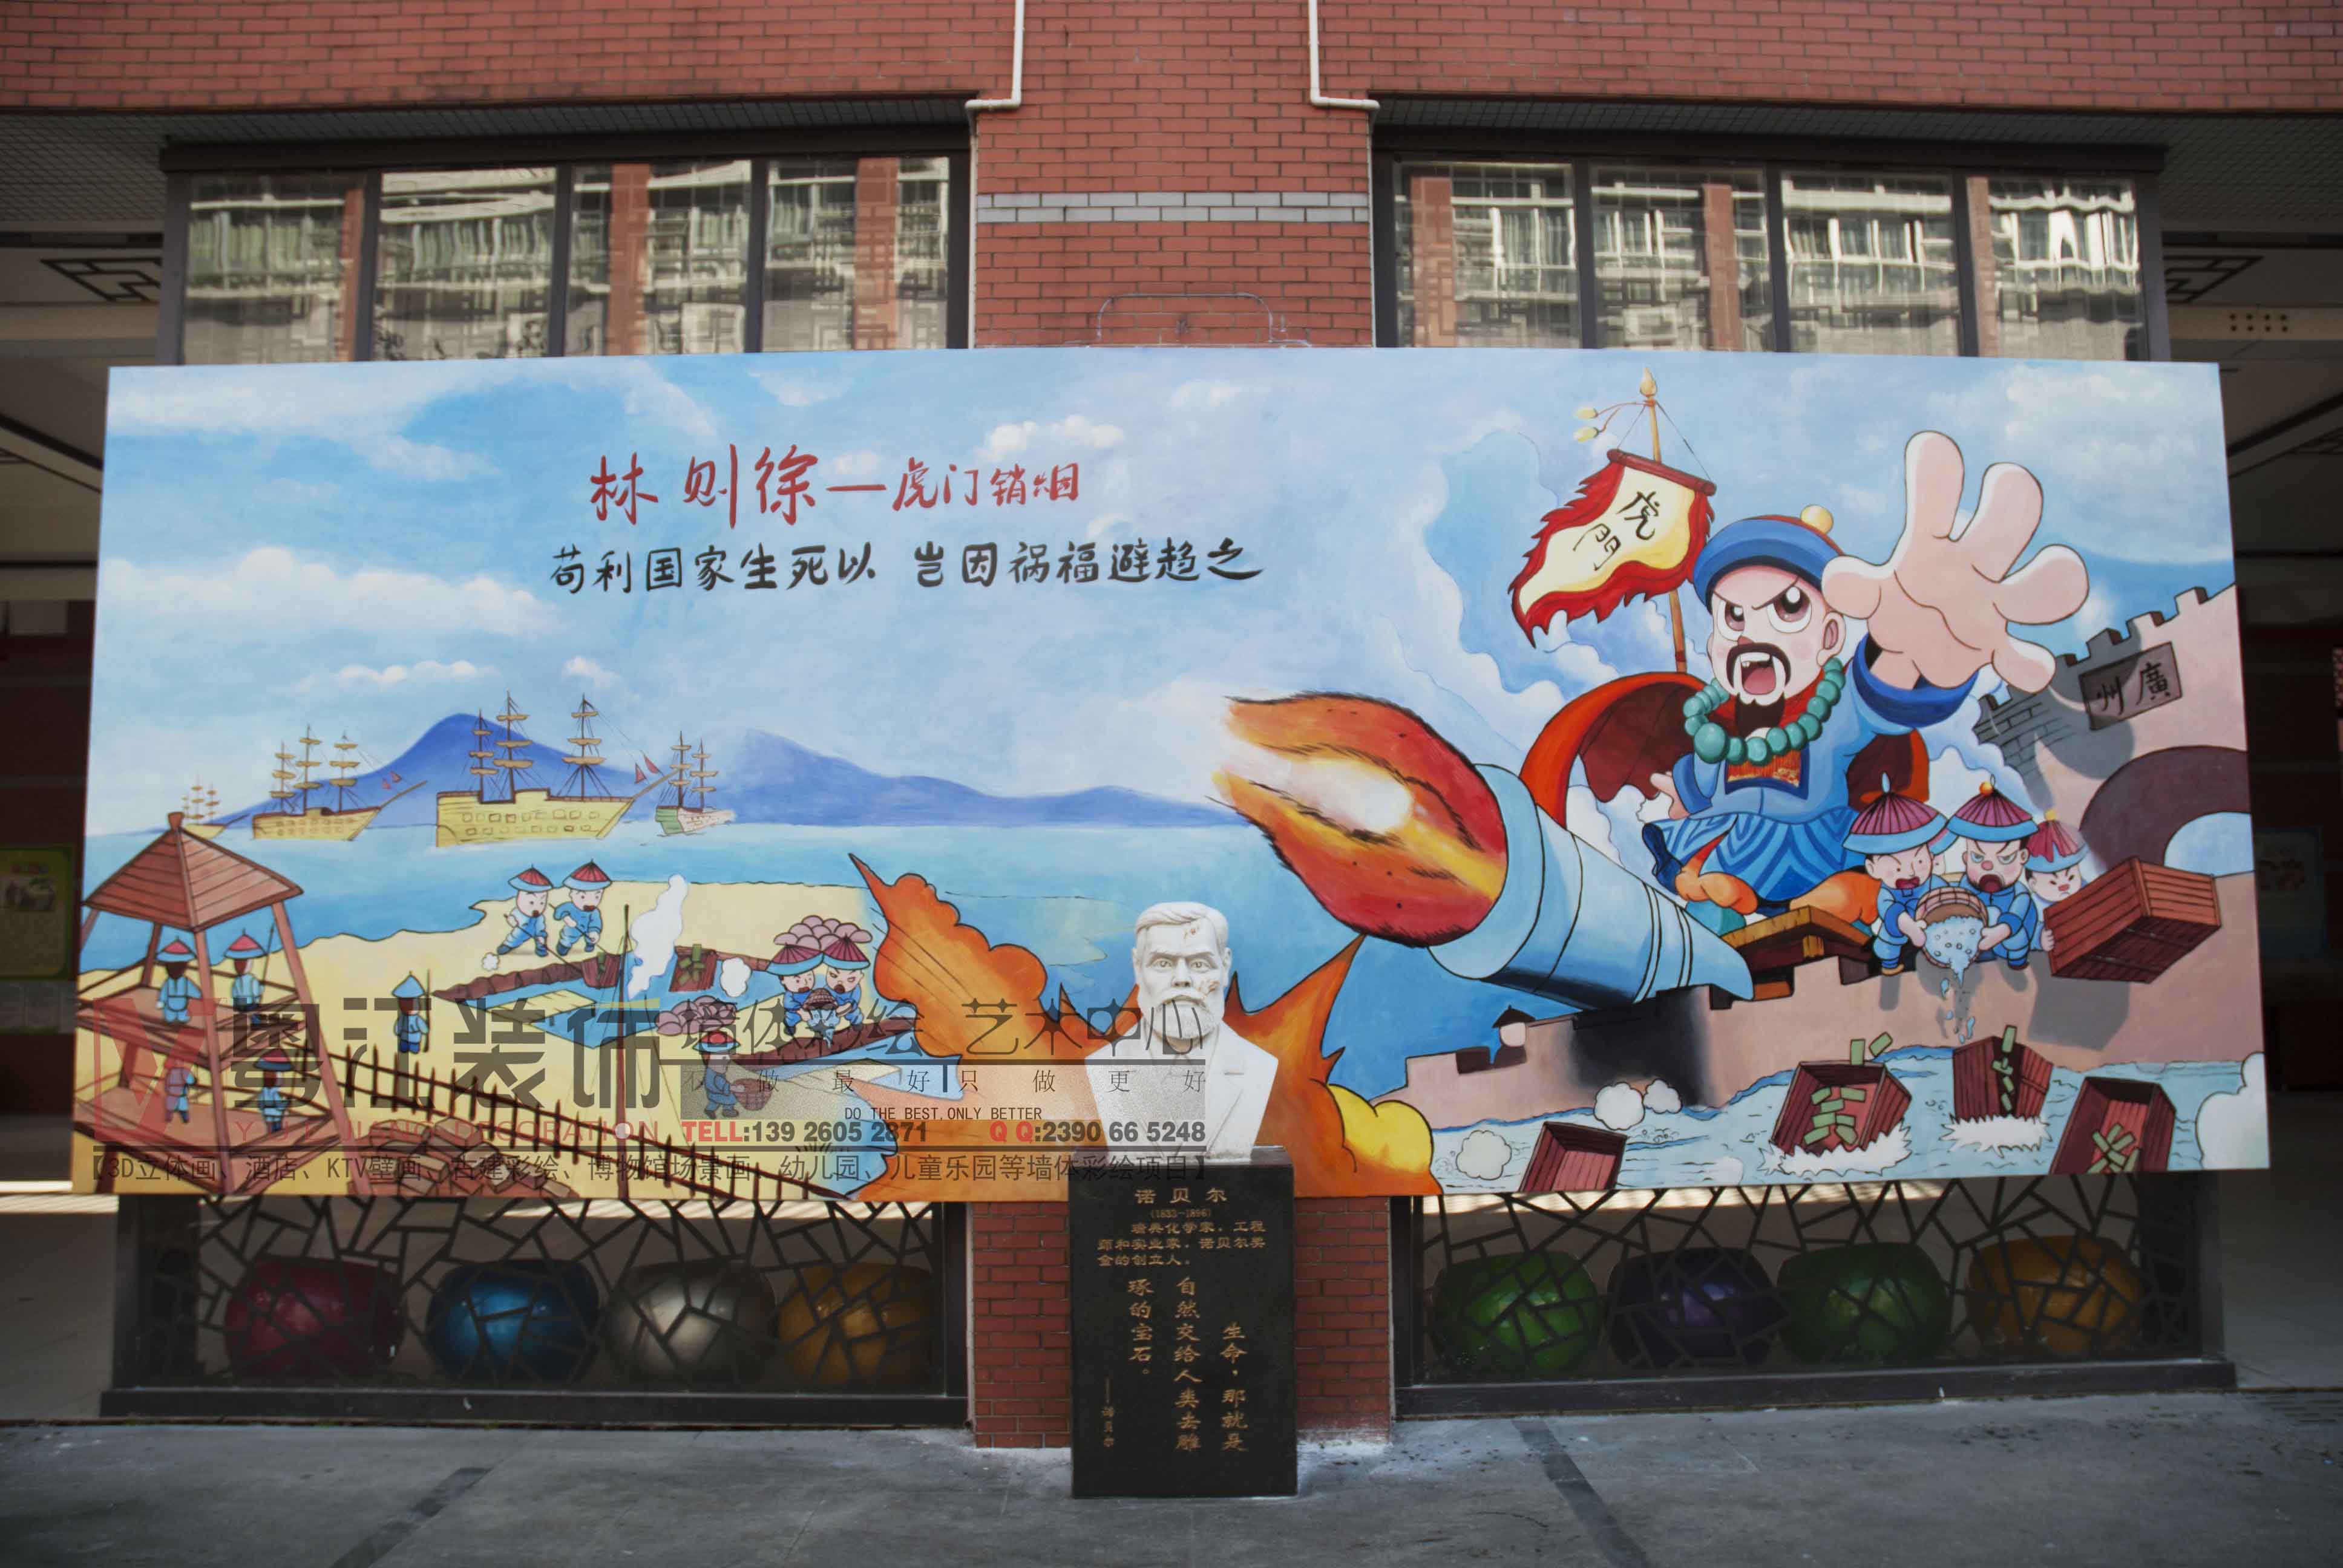 林则徐虎门销烟原创校园文化建设艺术手绘墙